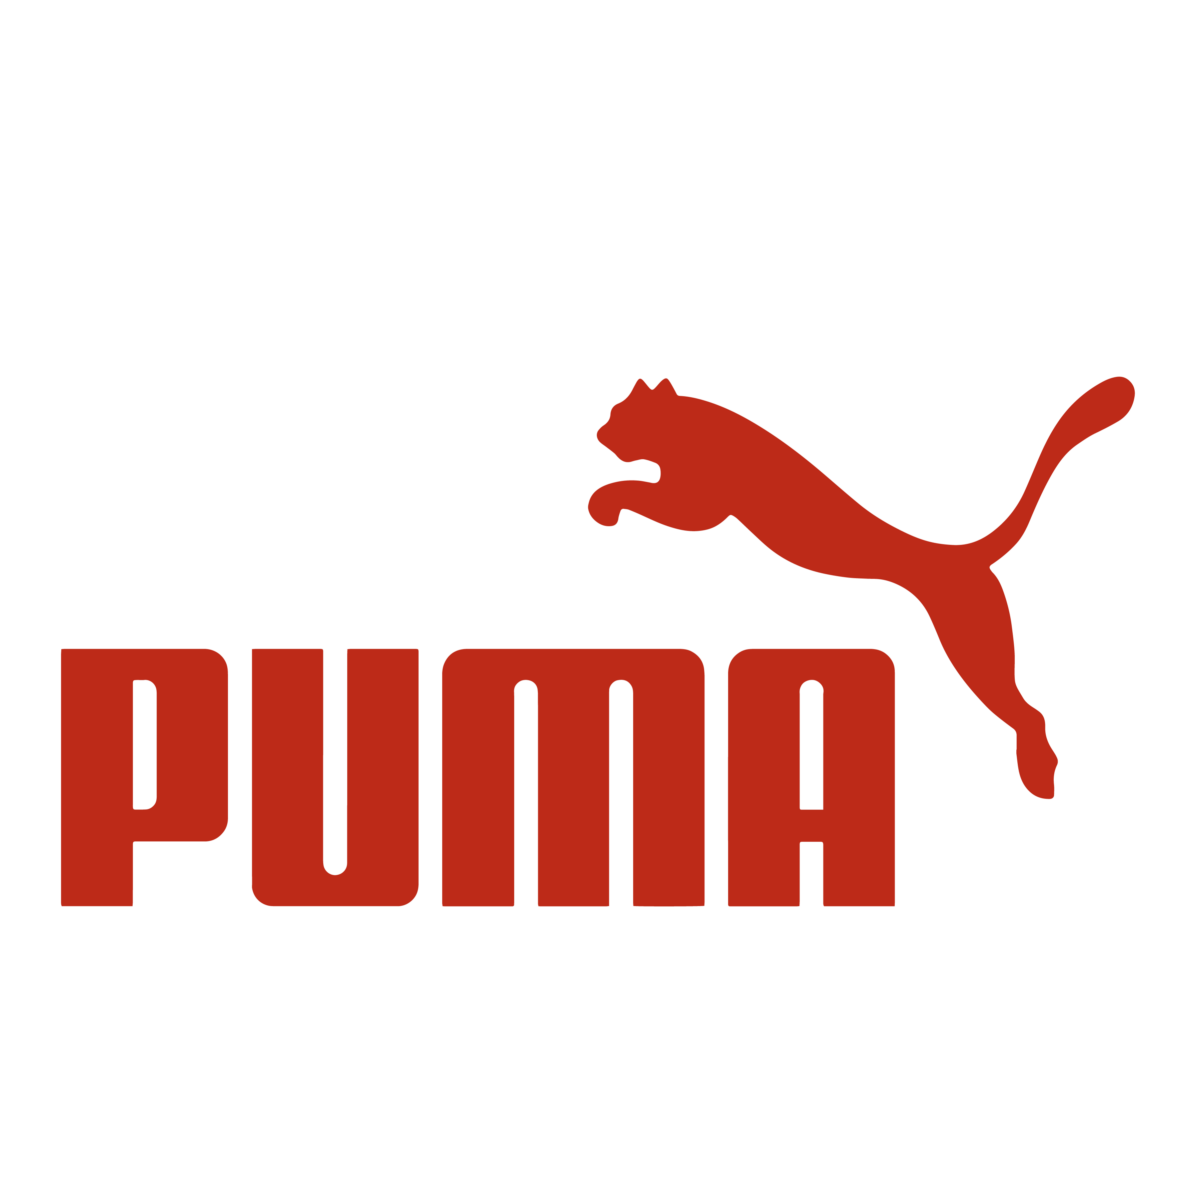 Red Puma logo